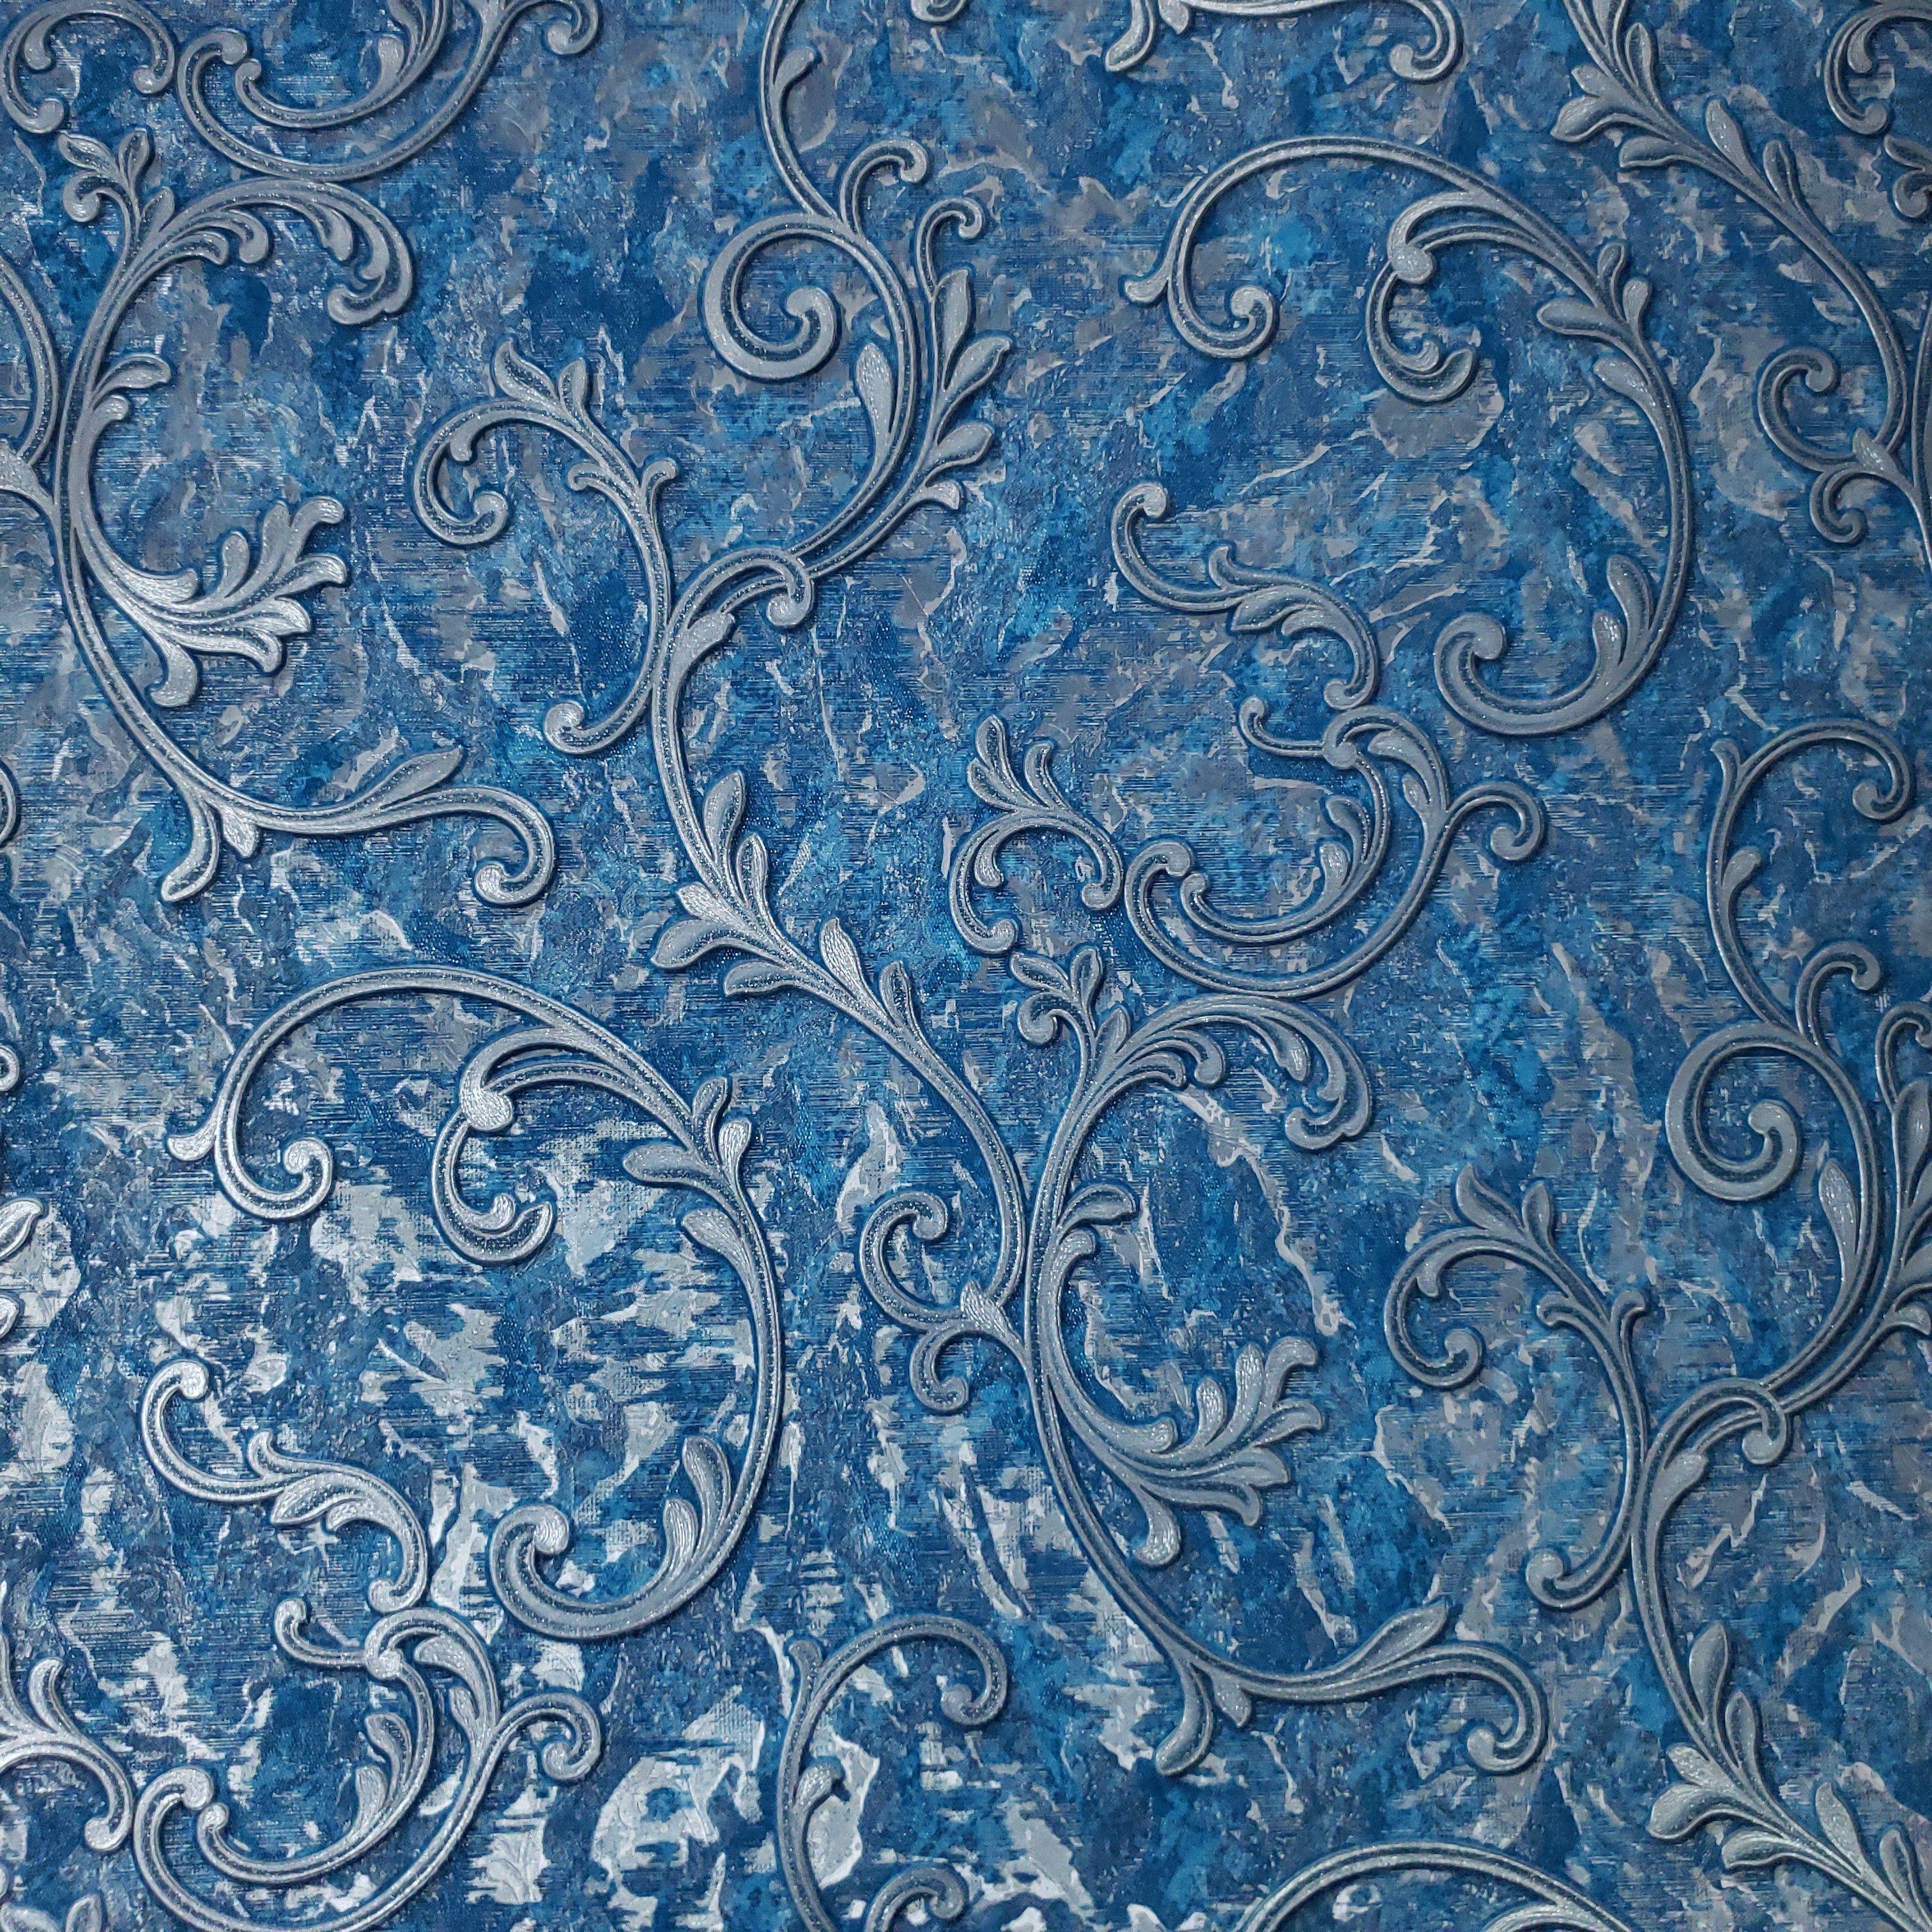 Konark Designer Wallpapers 3D Damask Design roll Big Size Embossed Finish  for Covering Living Room Bedroom Walls Blue Color  57 Sqft Roll   Amazonin Home Improvement